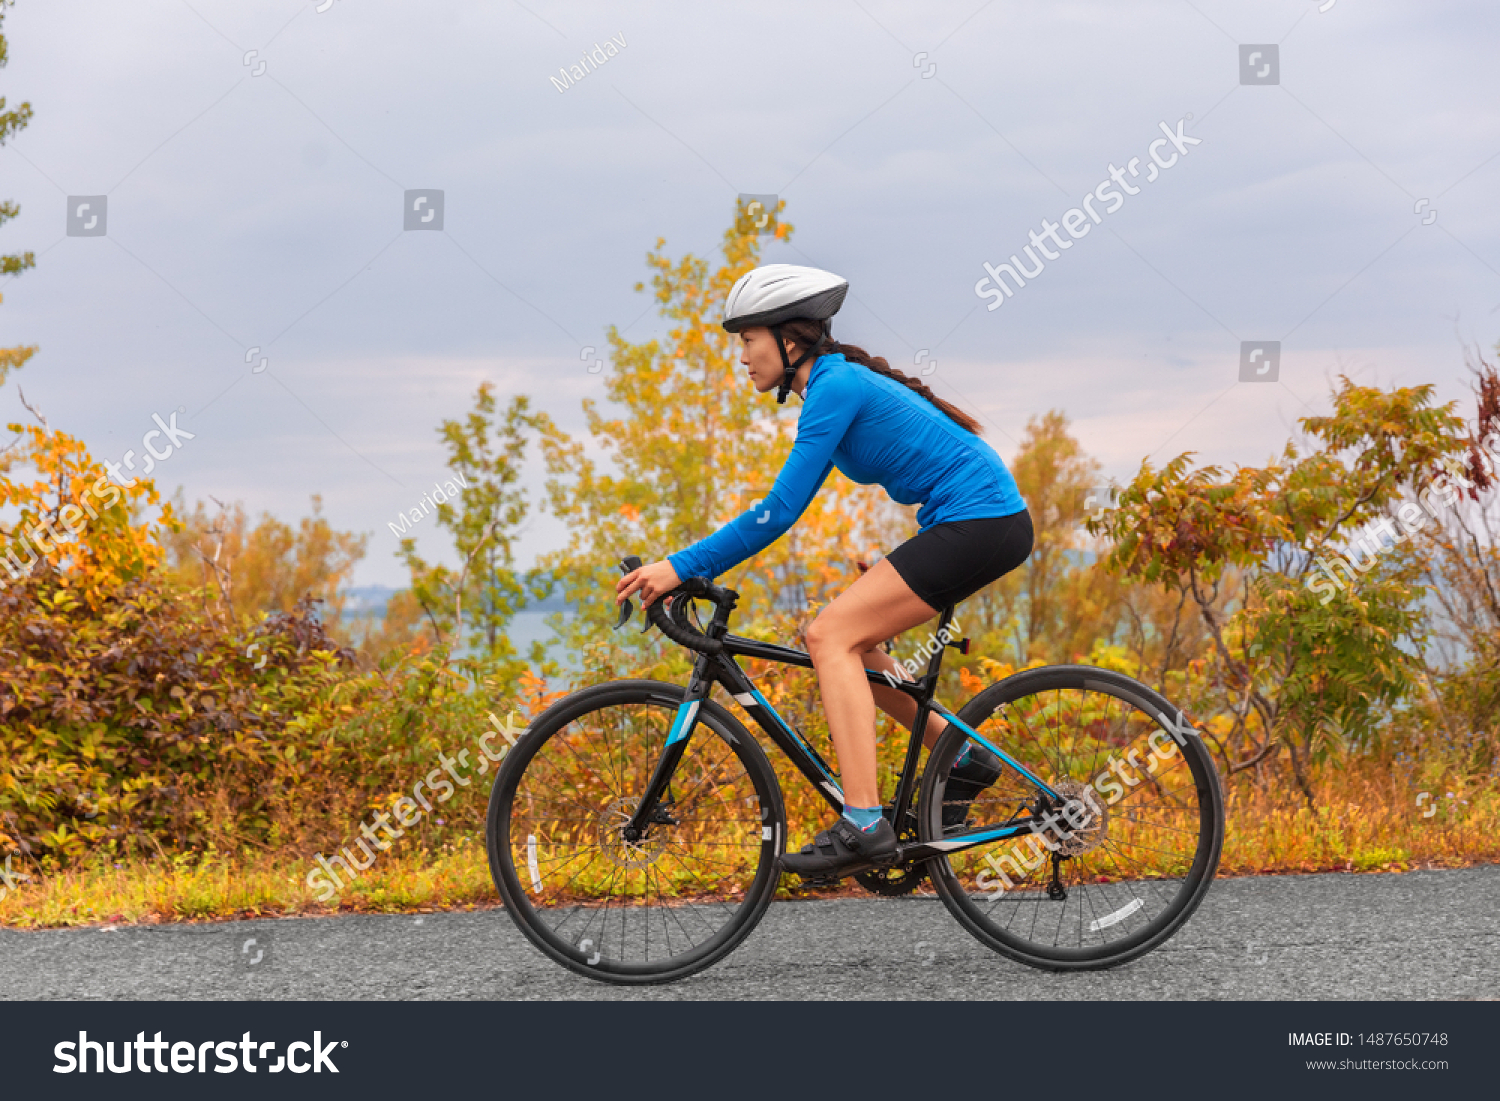 road bike for girl